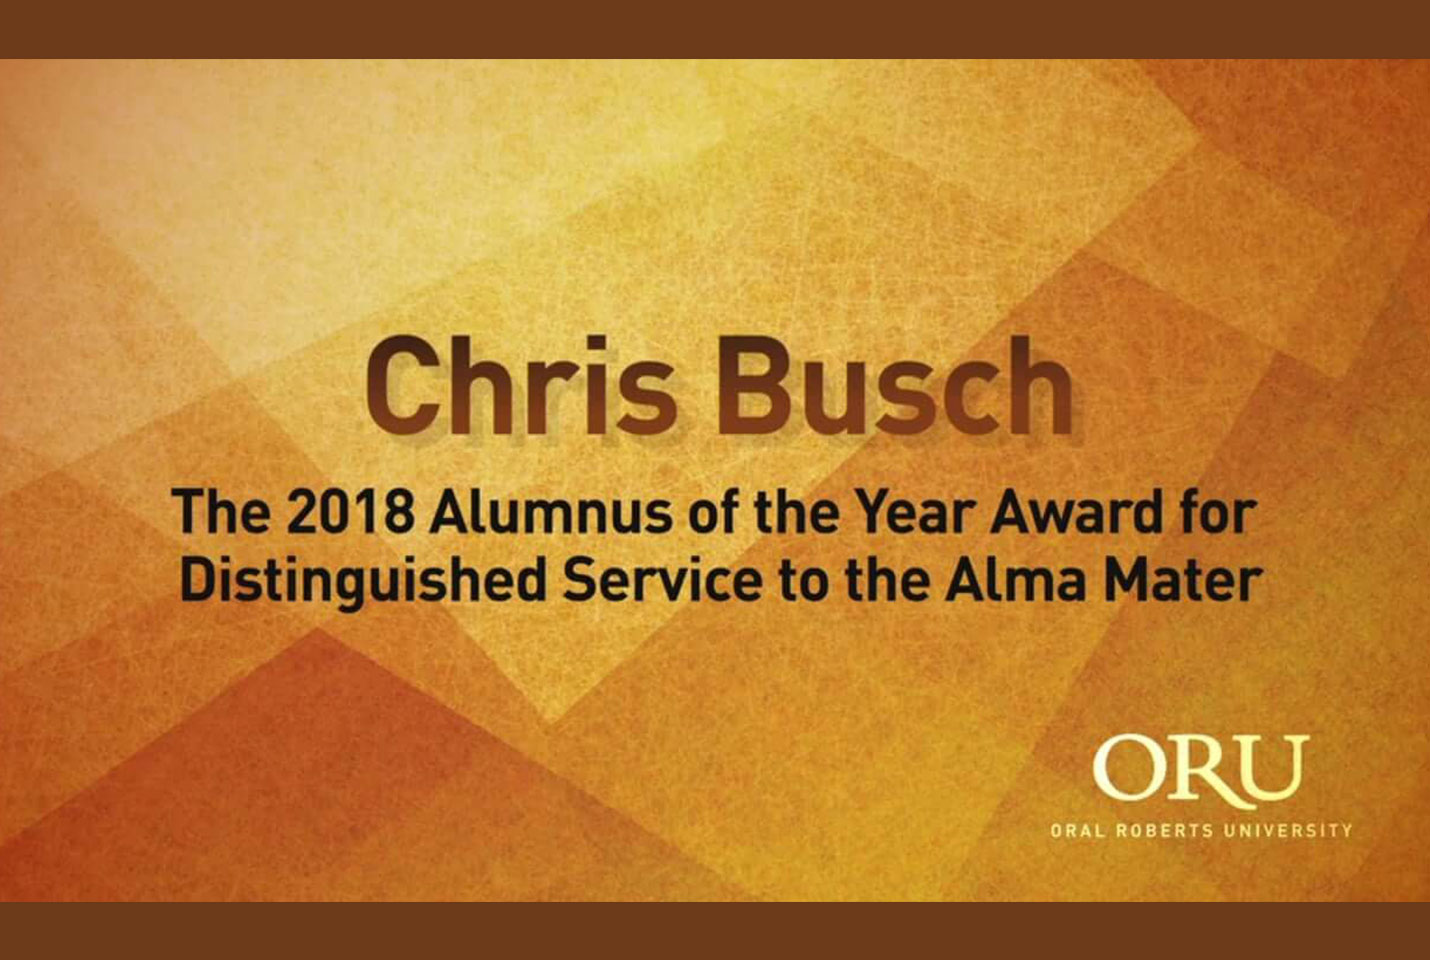 Chris Busch